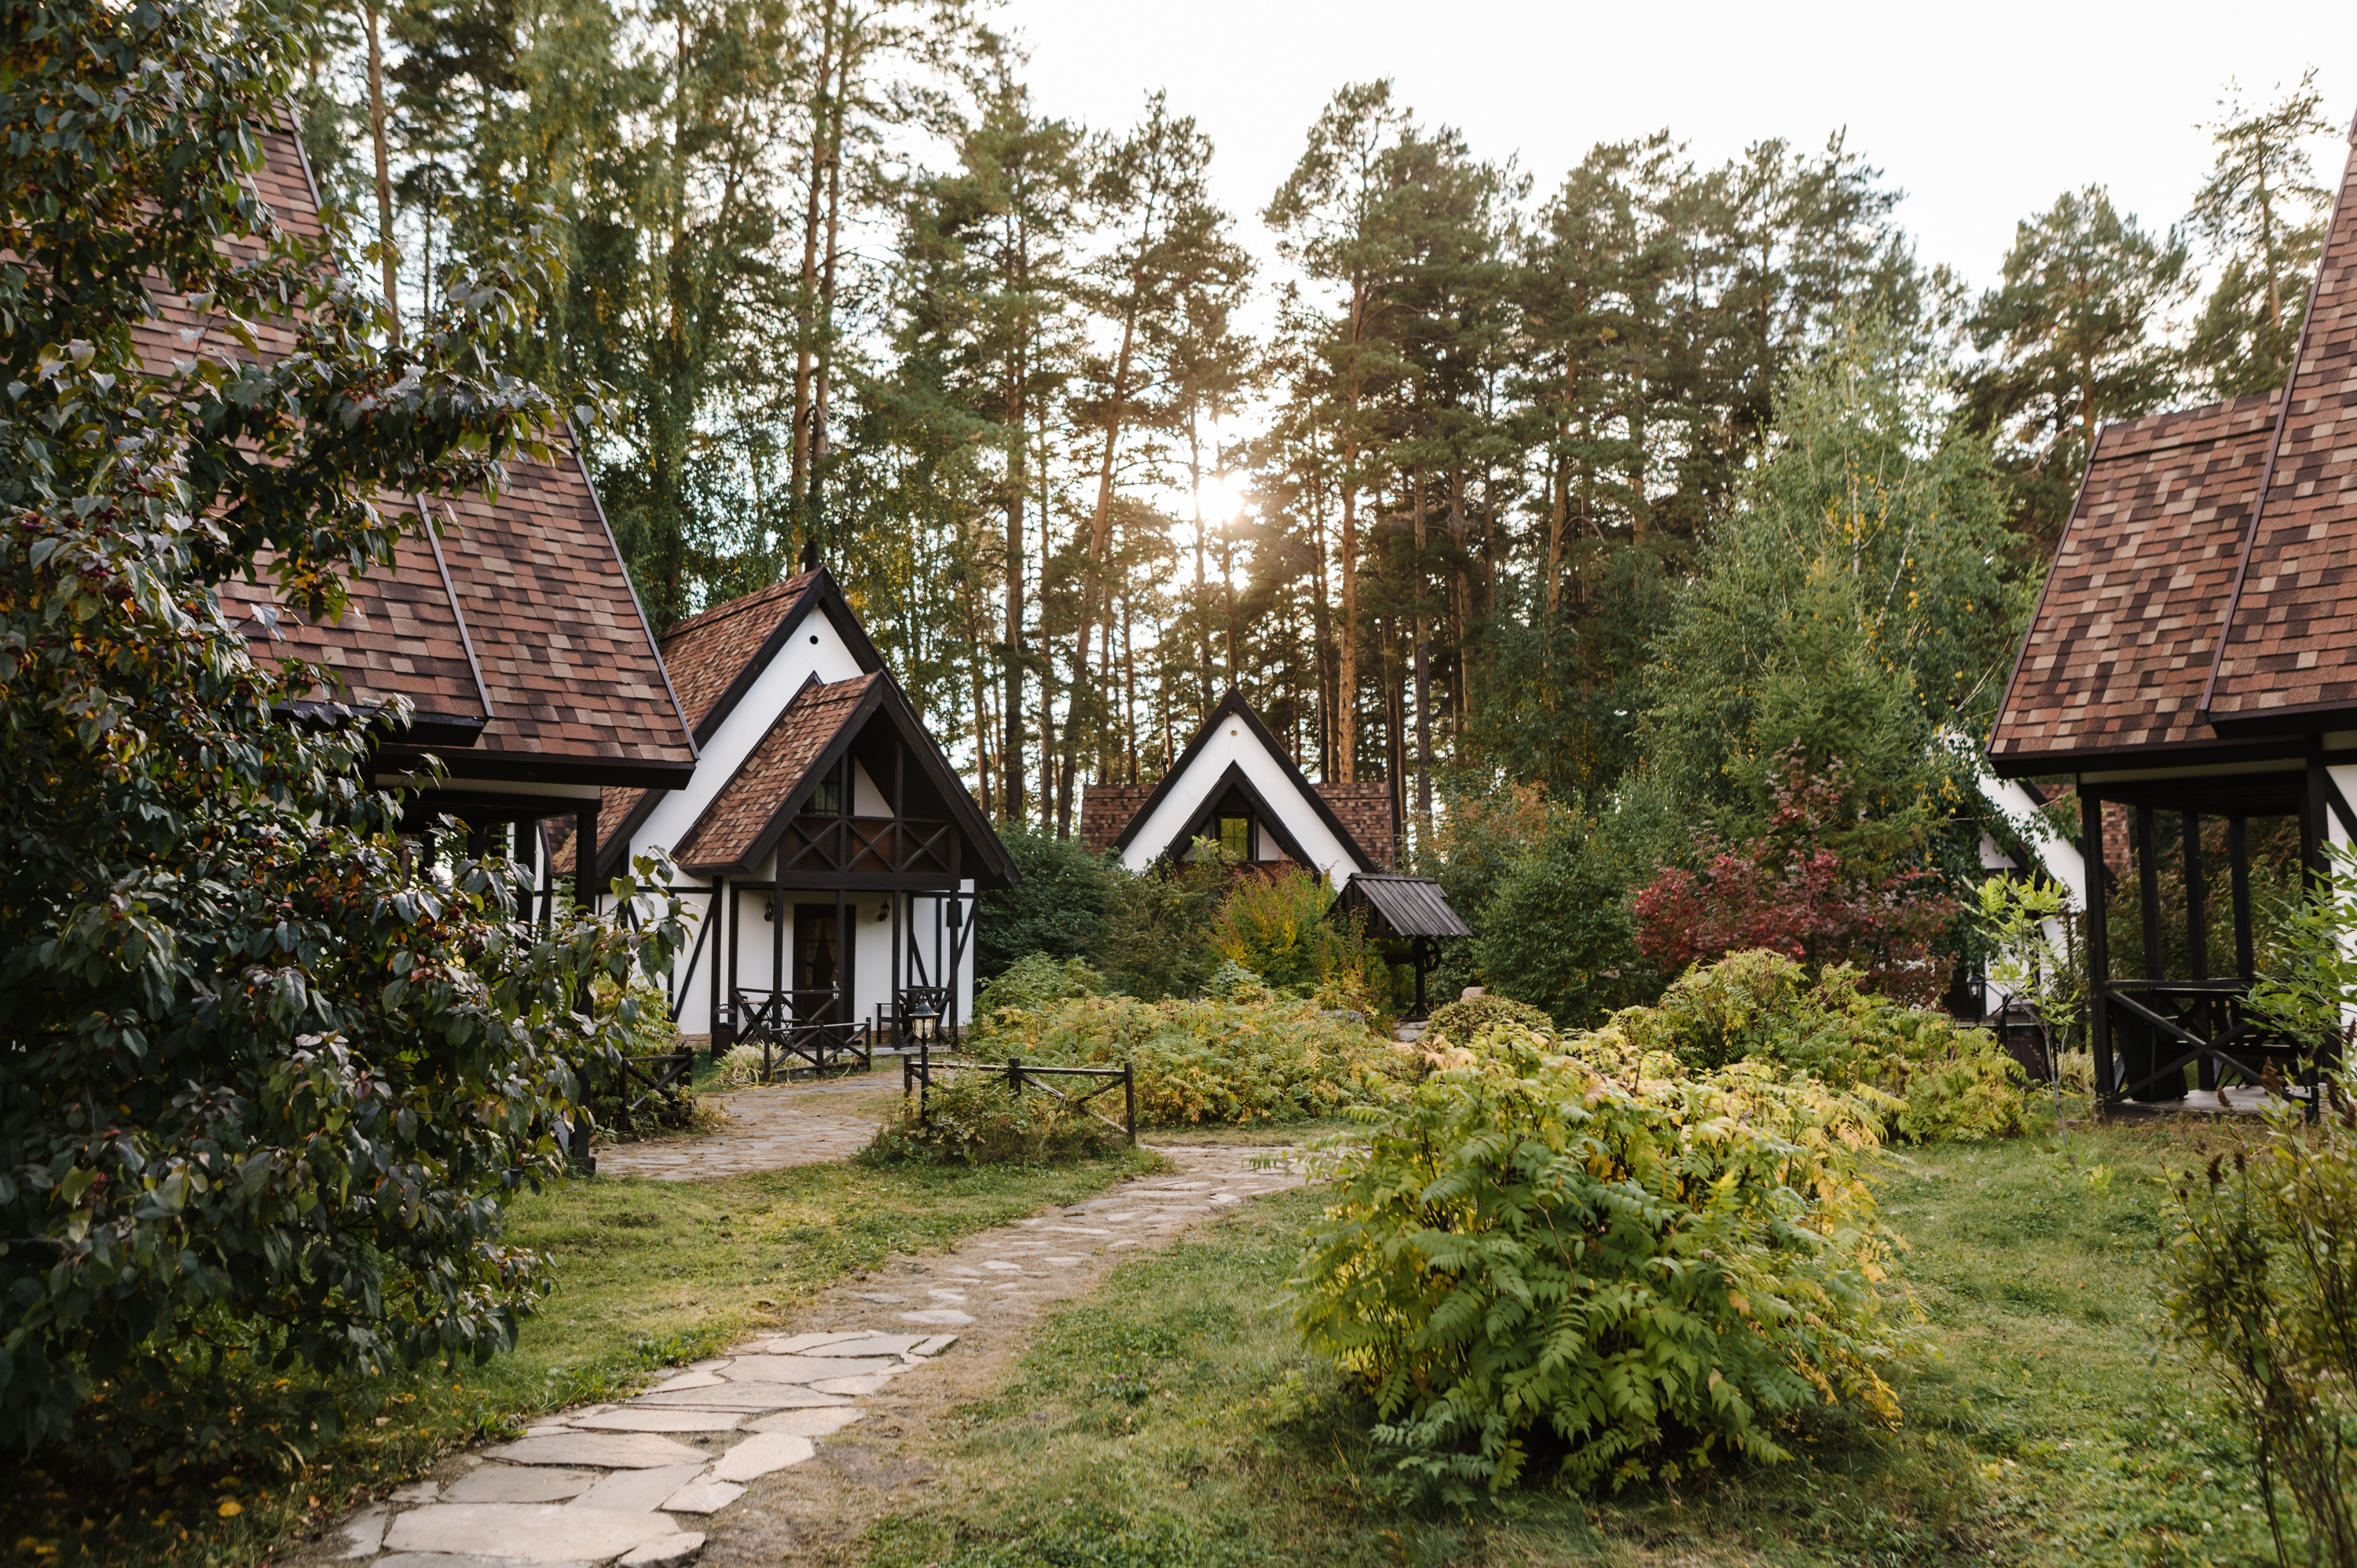 Небольшая сказочная деревня. В бело-коричневых домиках вы можете поселиться большой семьей или друзьями и провести летний вечер у трескучего камина